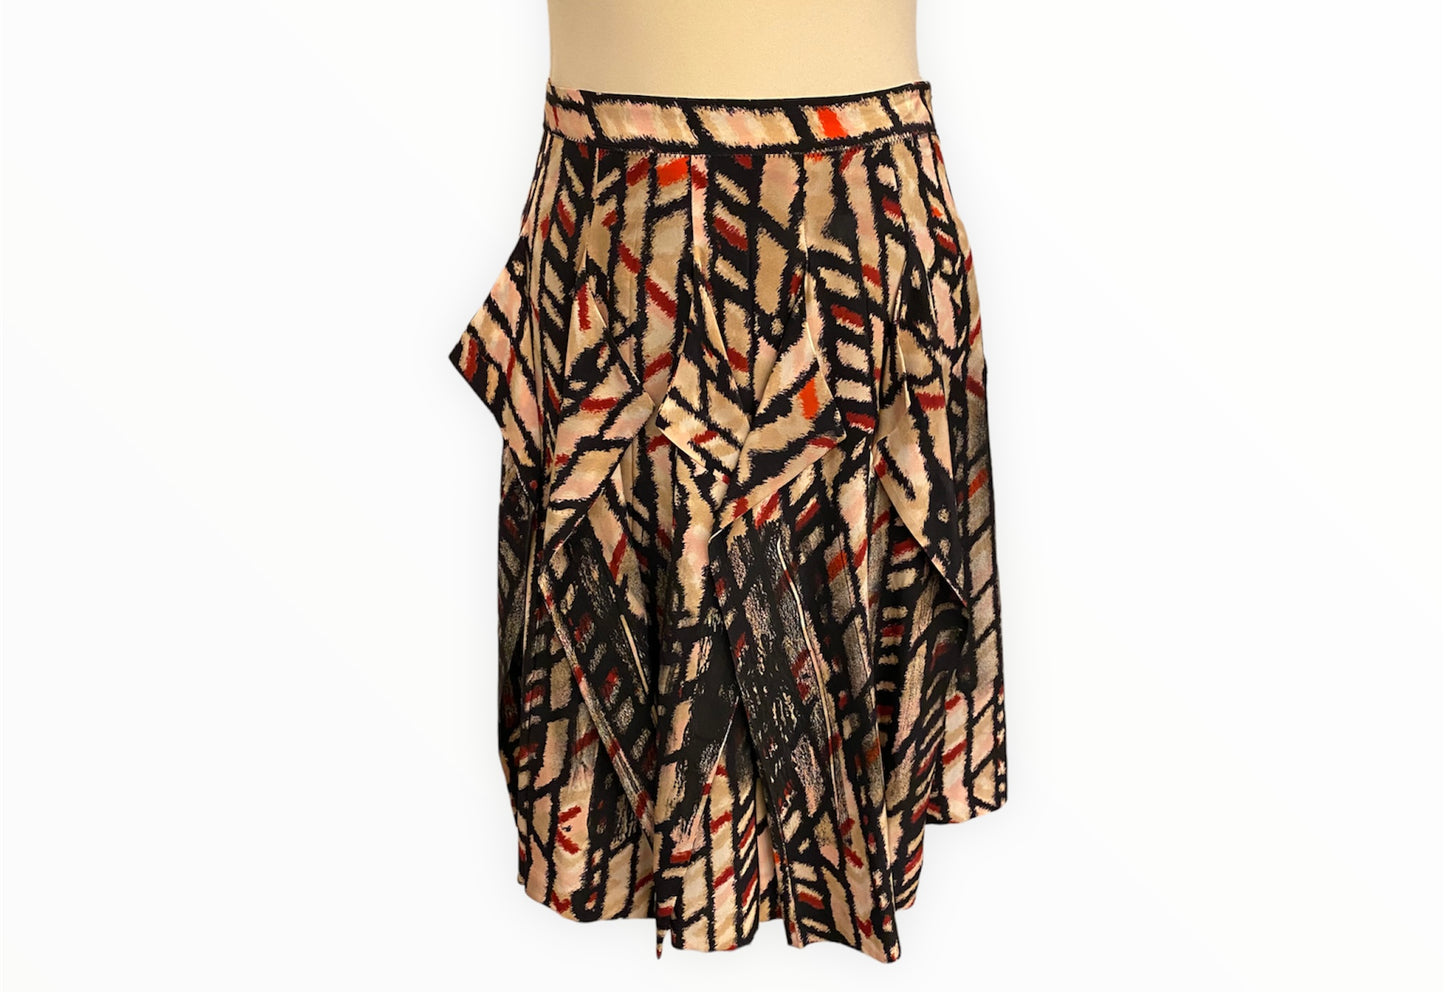 BOTTEGA VENETA Silk Skirt Size It 46 Eu 40/42